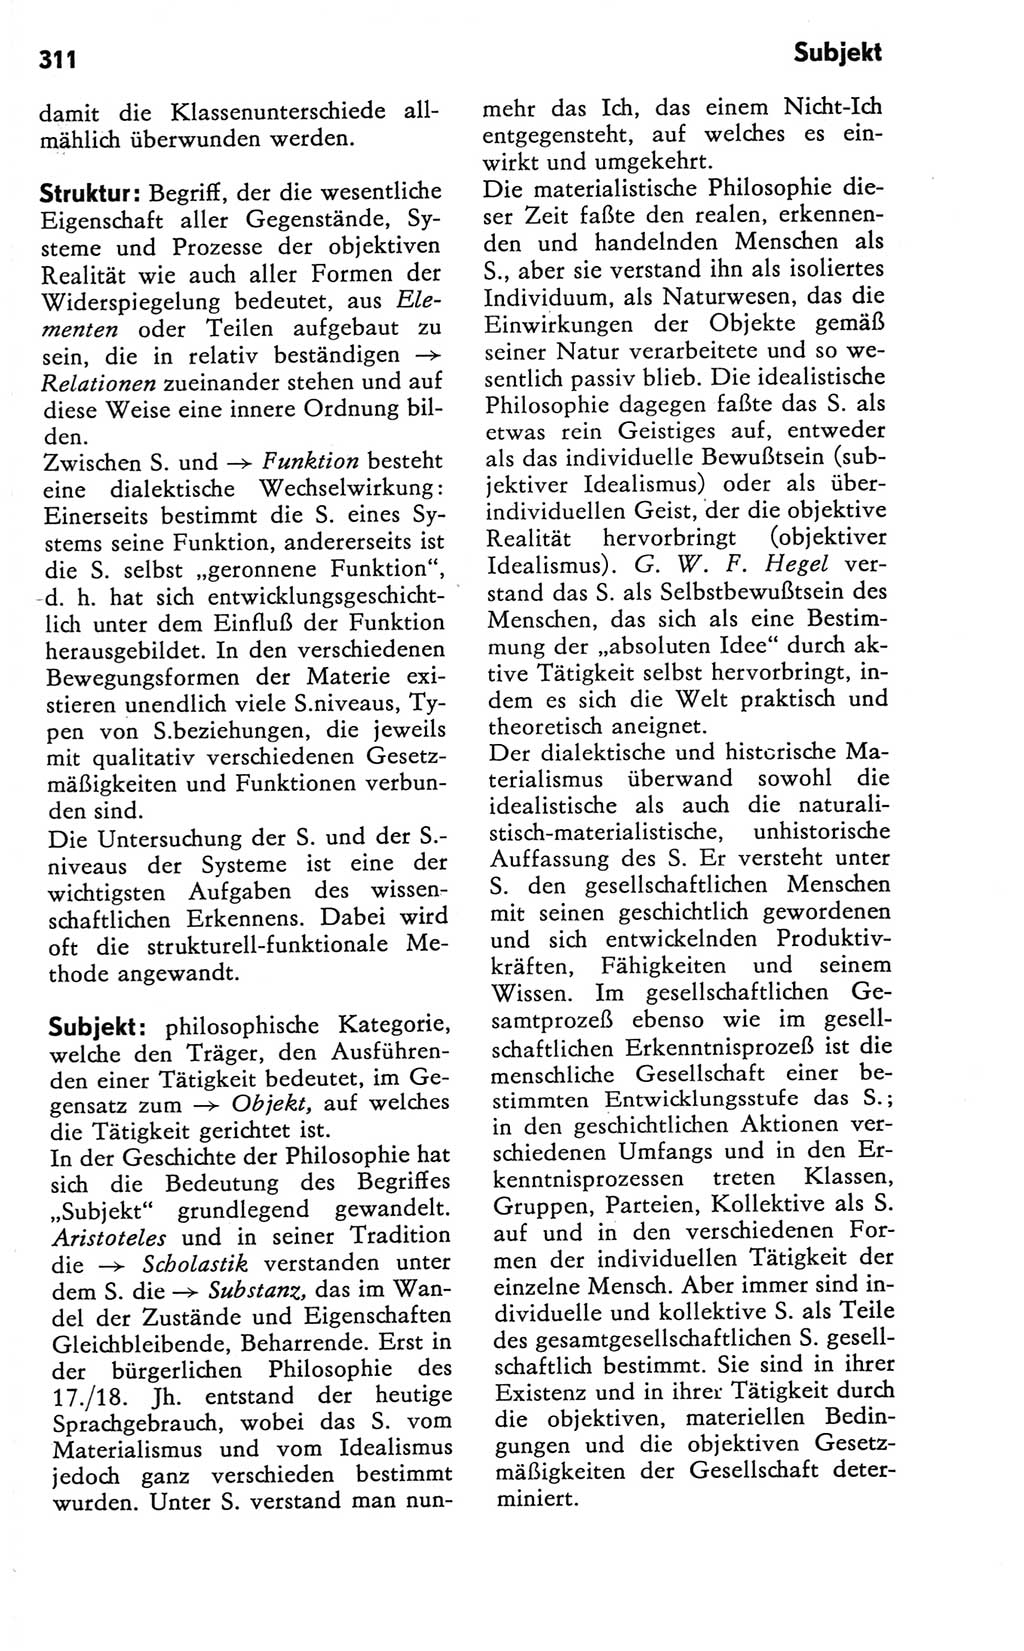 Kleines Wörterbuch der marxistisch-leninistischen Philosophie [Deutsche Demokratische Republik (DDR)] 1981, Seite 311 (Kl. Wb. ML Phil. DDR 1981, S. 311)